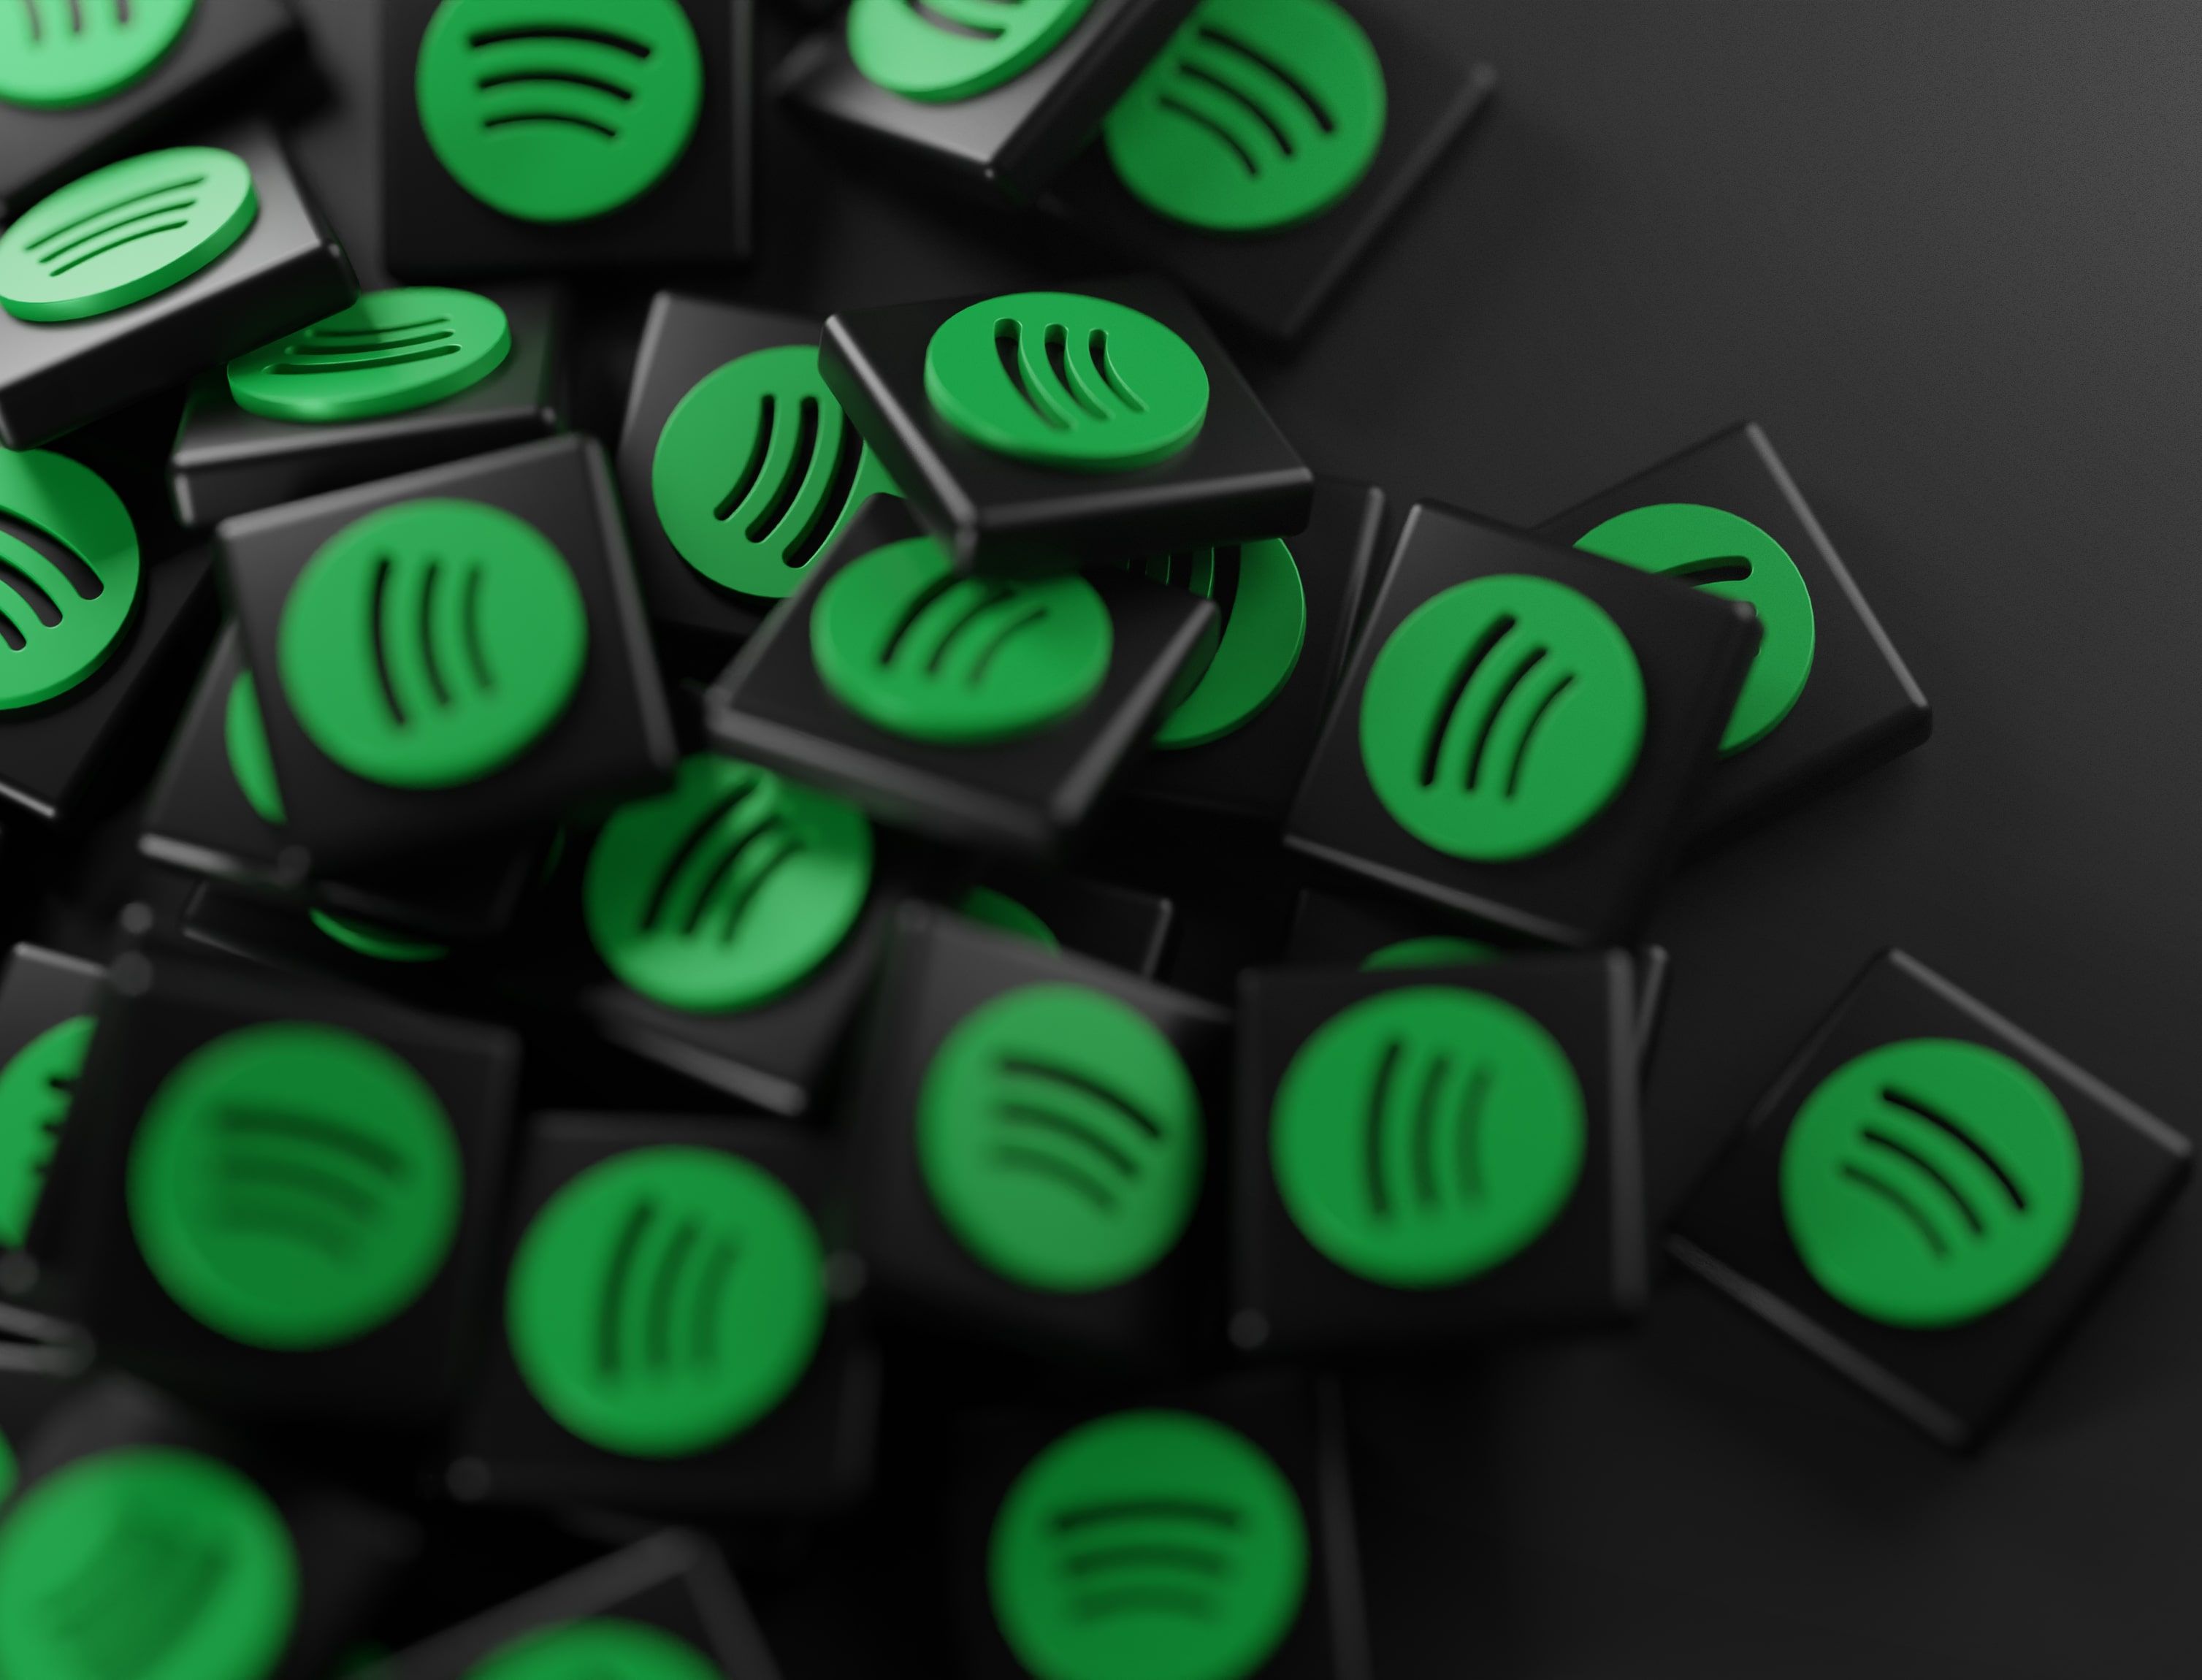 Spotify ha decidido subir el precio del plan familiar